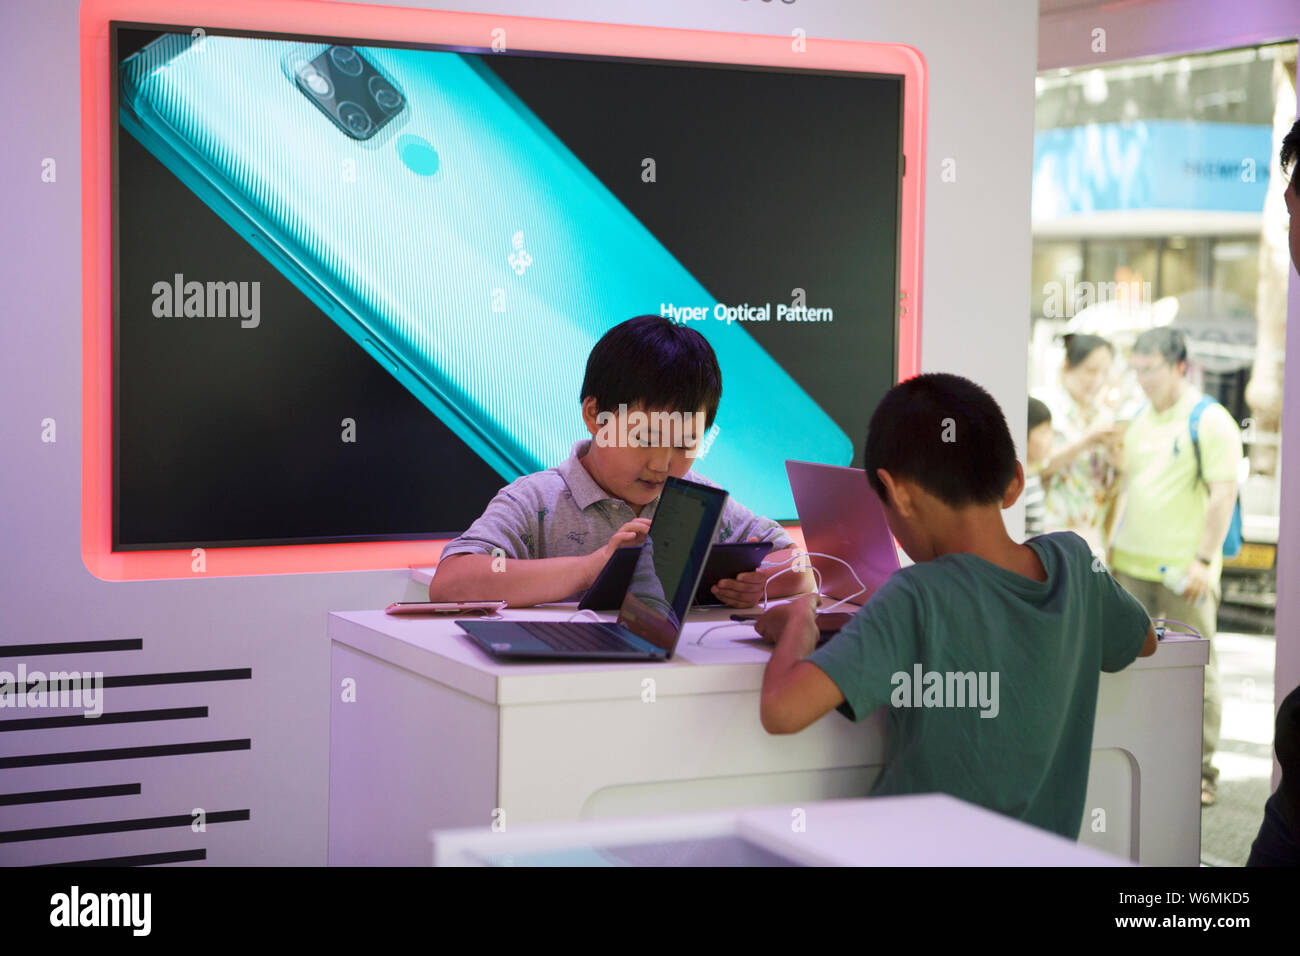 Huawei - tecnologia 5g, rete 5g, 2 ragazzi asiatici che utilizzano 5g per giocare online. Aziende tecnologiche. Foto Stock